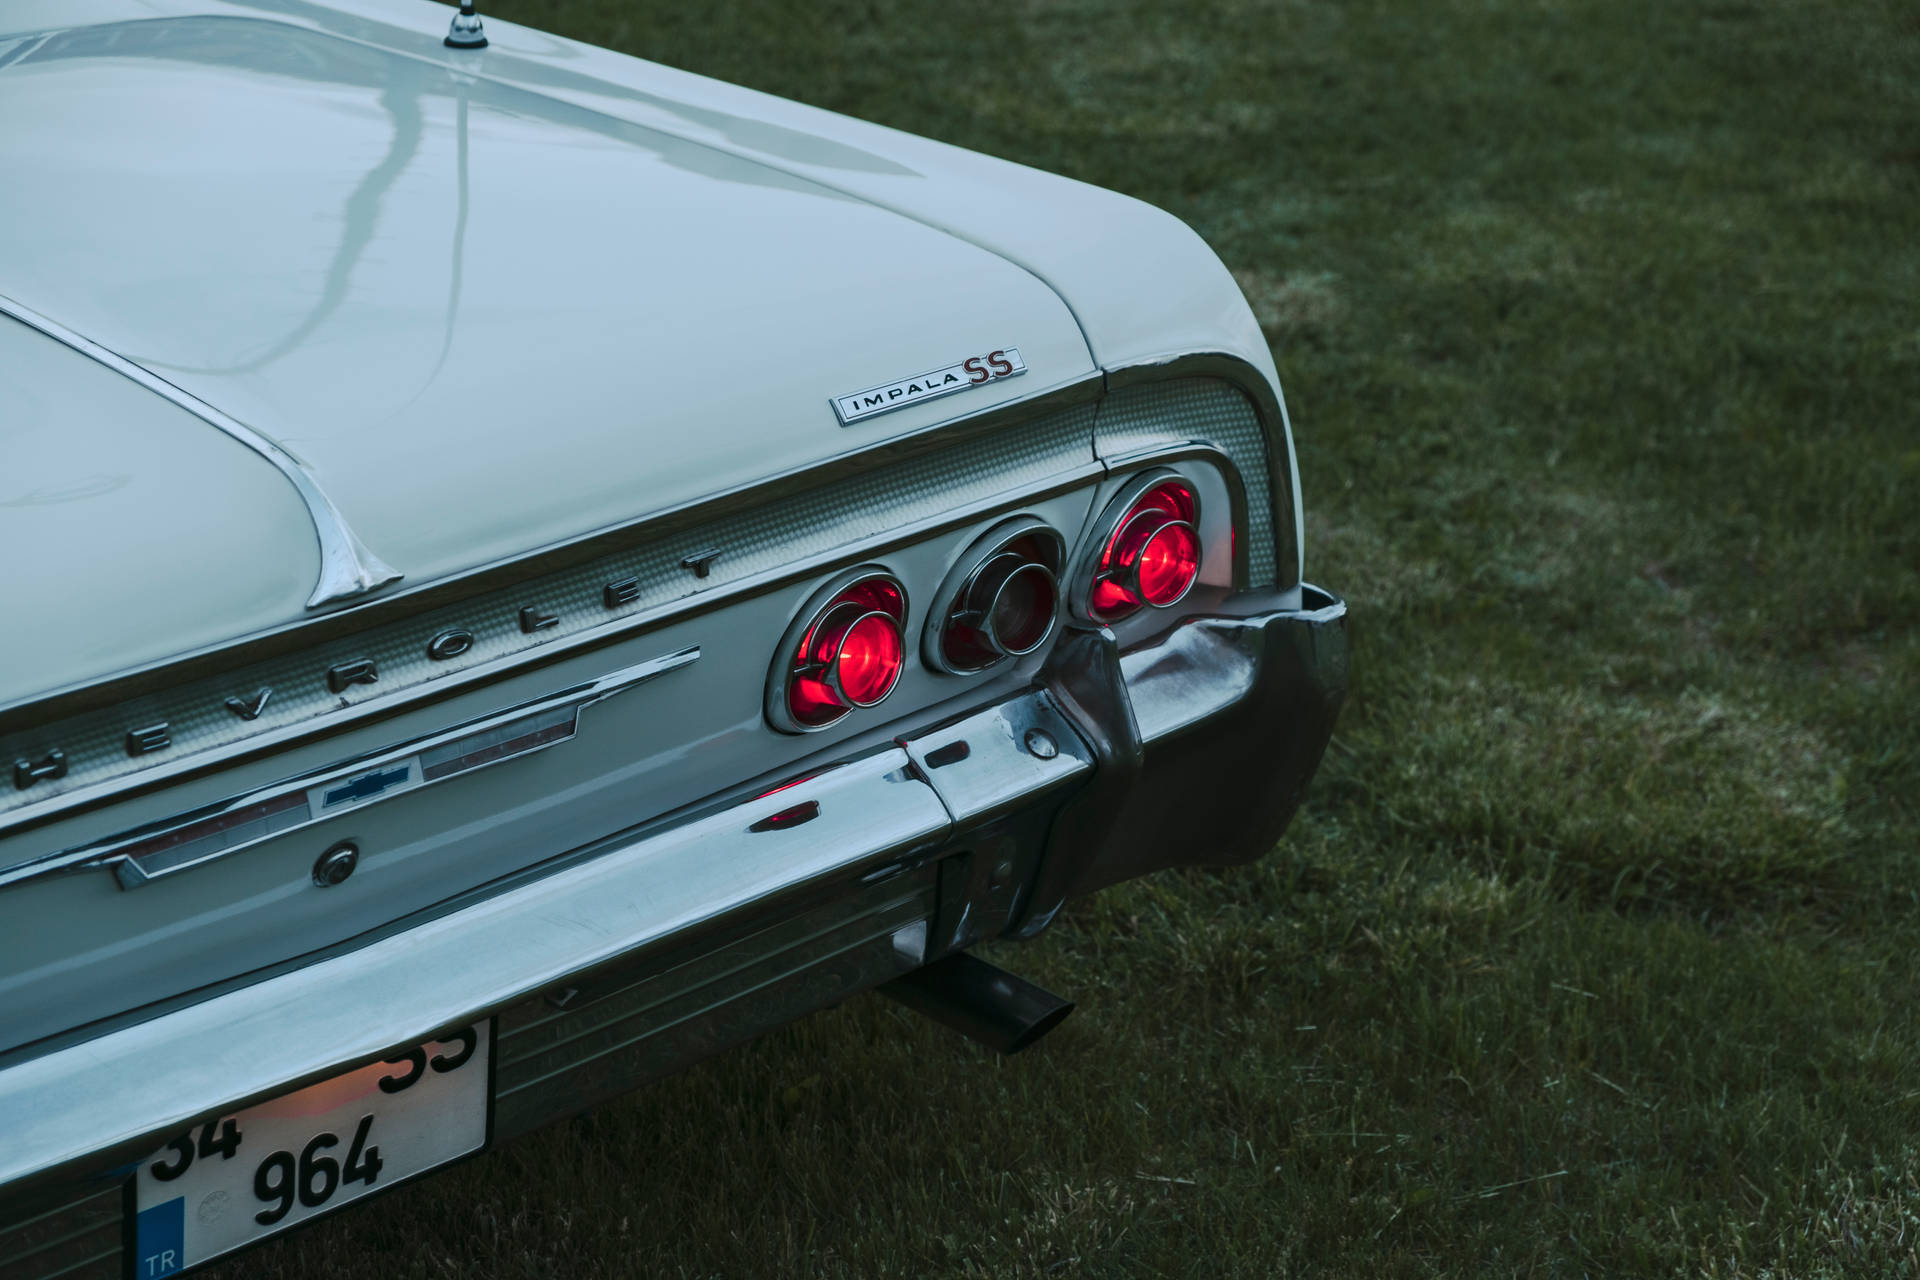 Lowrider Impala Ss Back